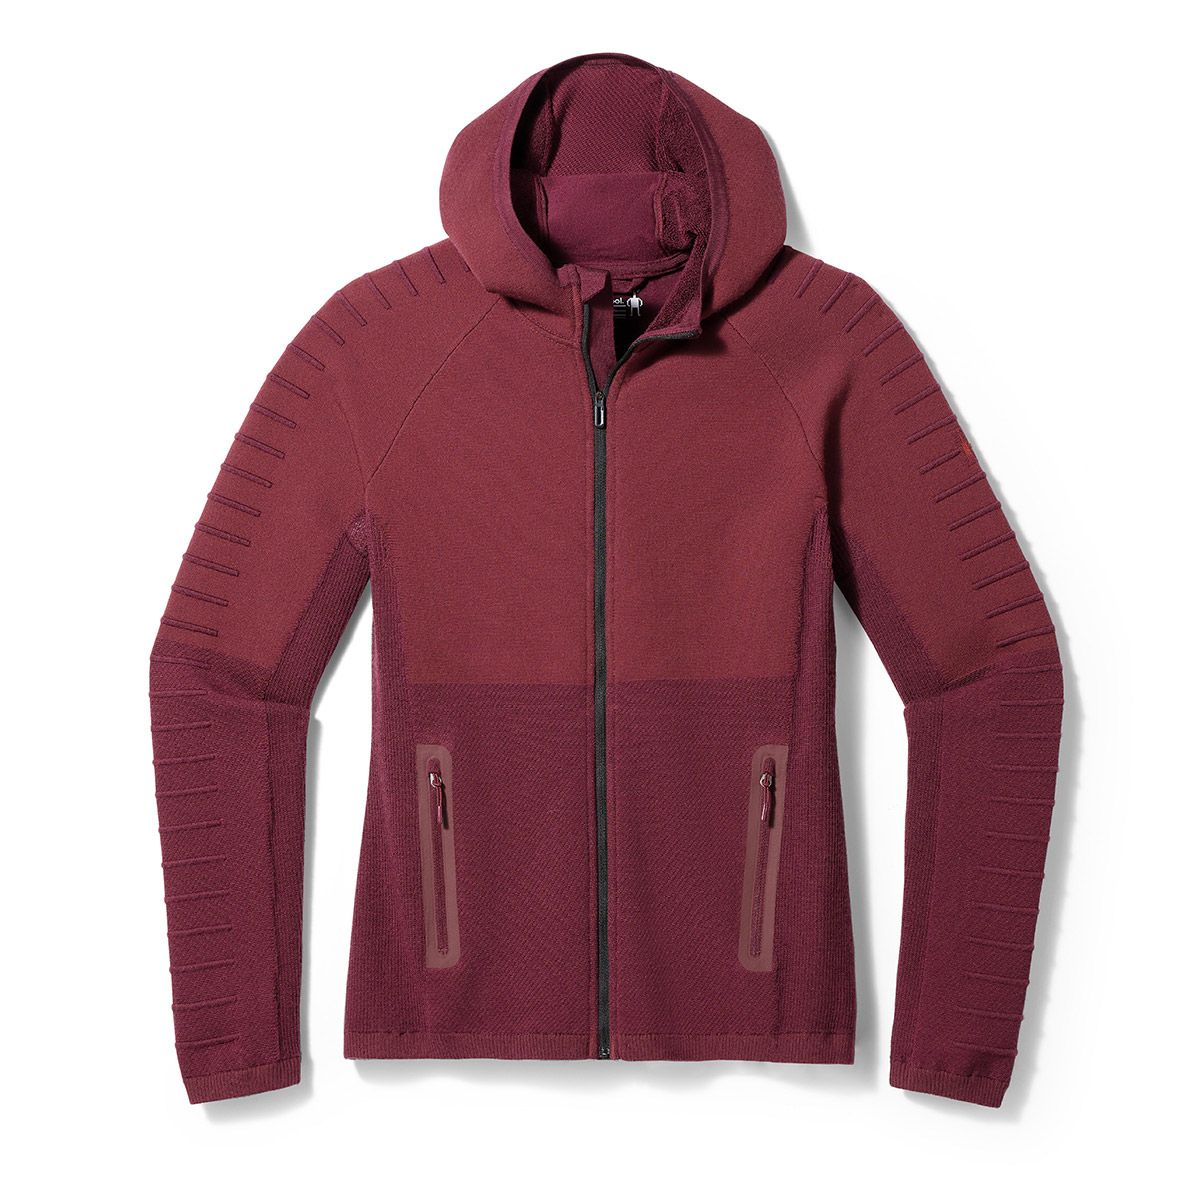 Smartwool Men's Hudson Trail Merino Wool Fleece Full Zip Jacket